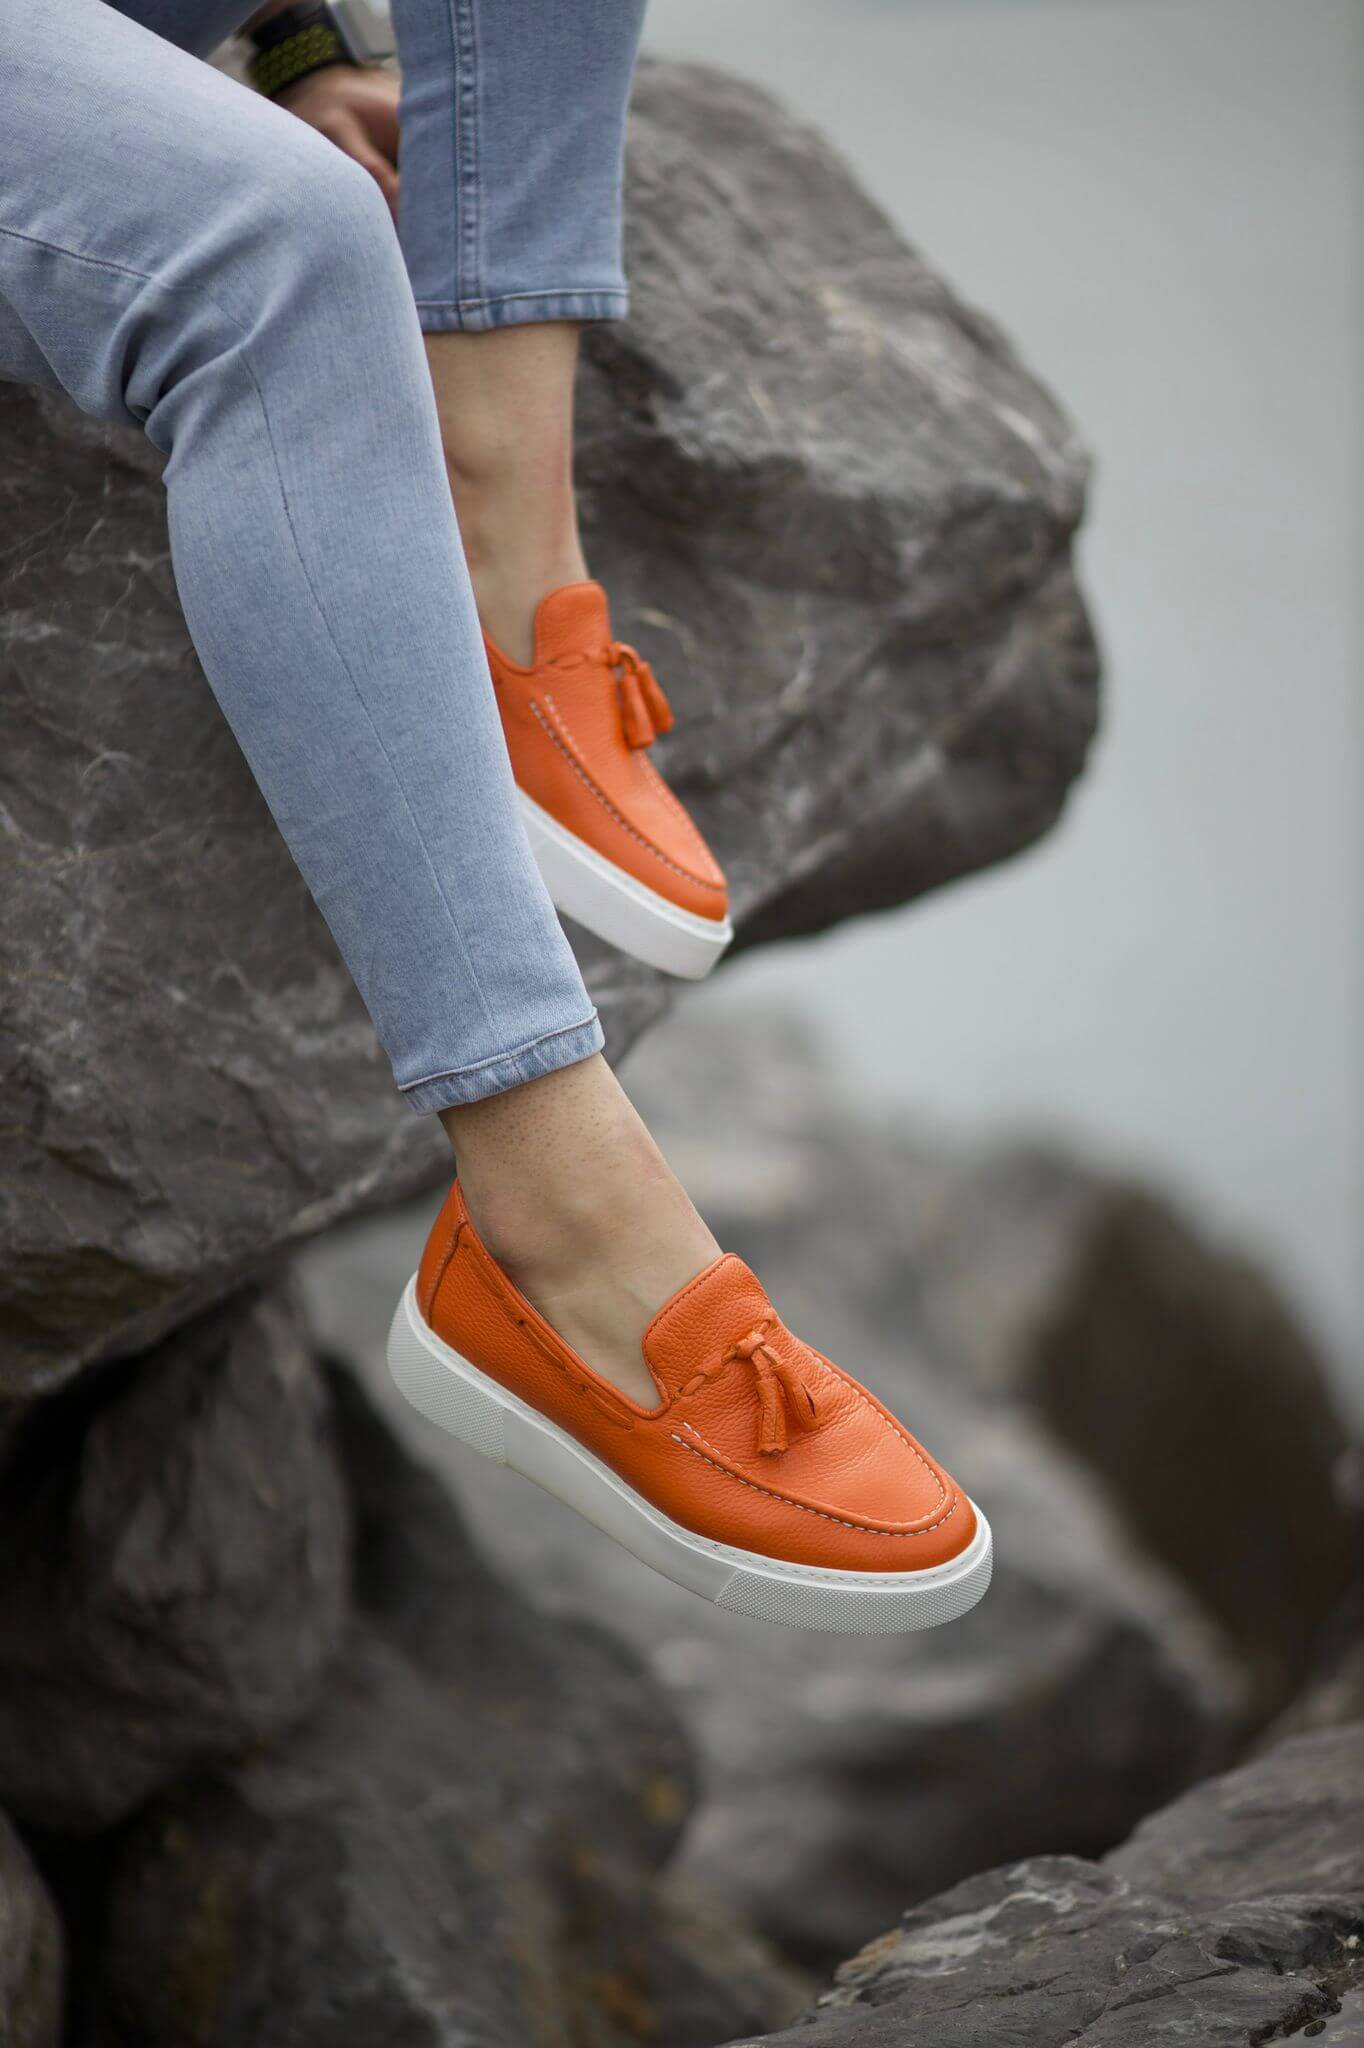 A Orange Tassel Leather Slip-Ons on display.